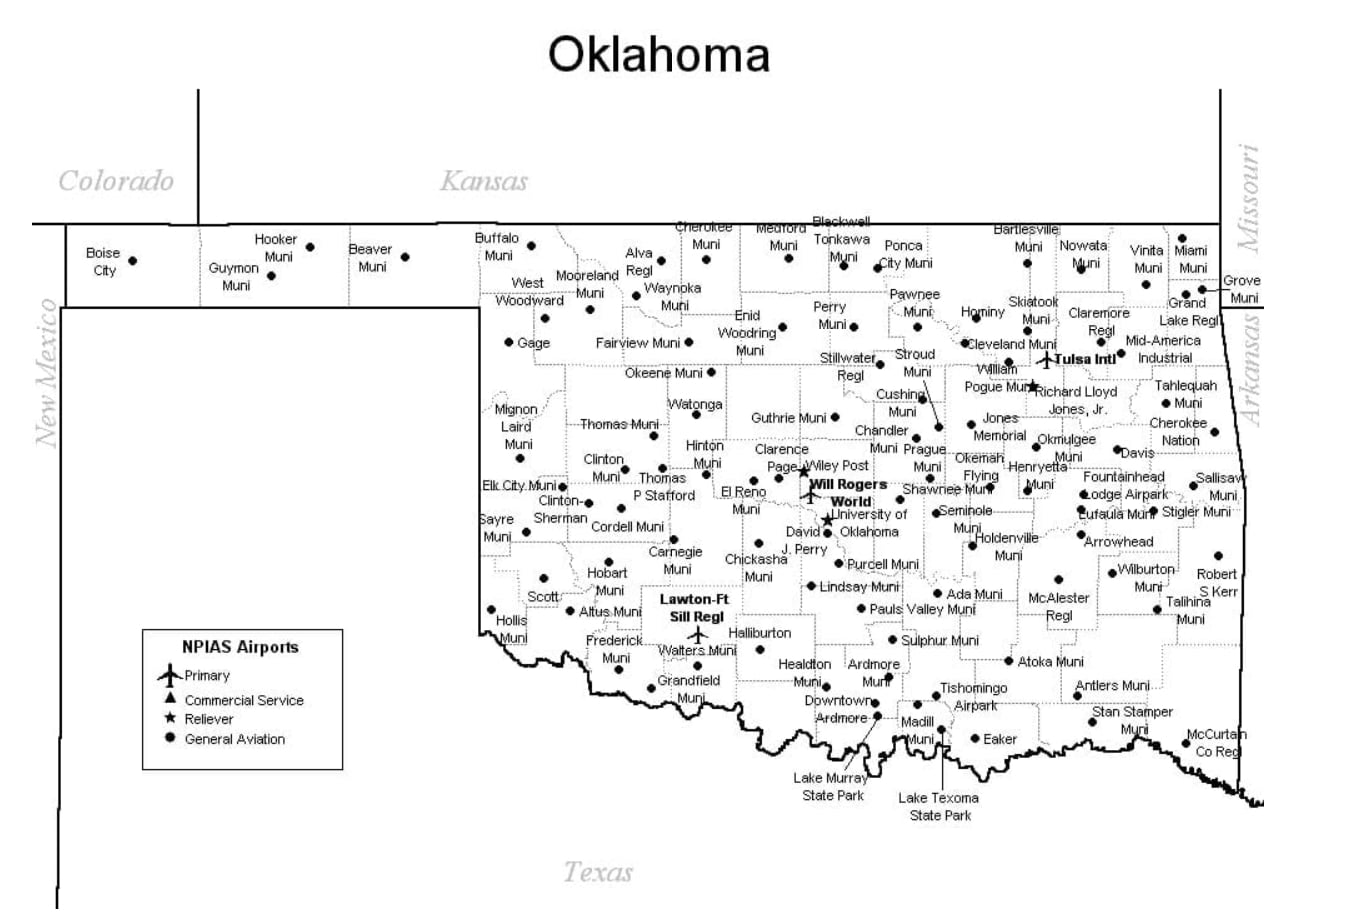 Oklahoma-airports-map